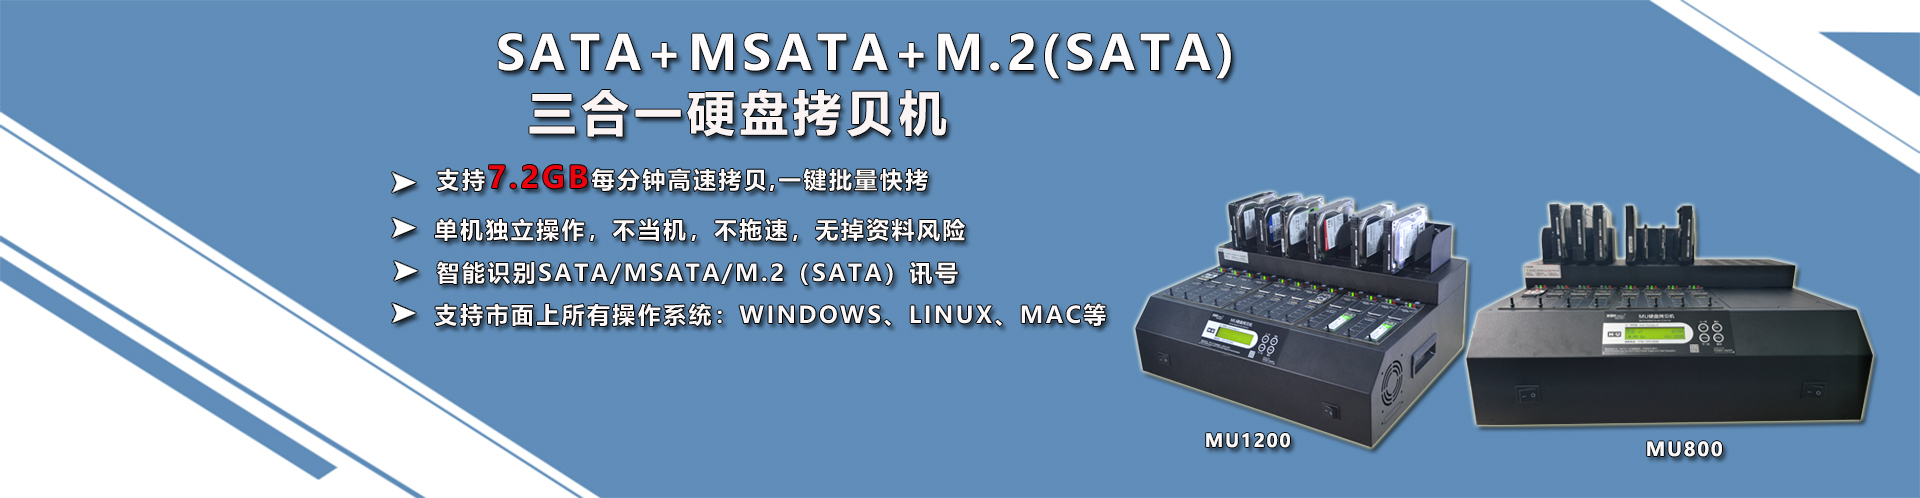 SATA+MSATA+M.2(SATA)三合一